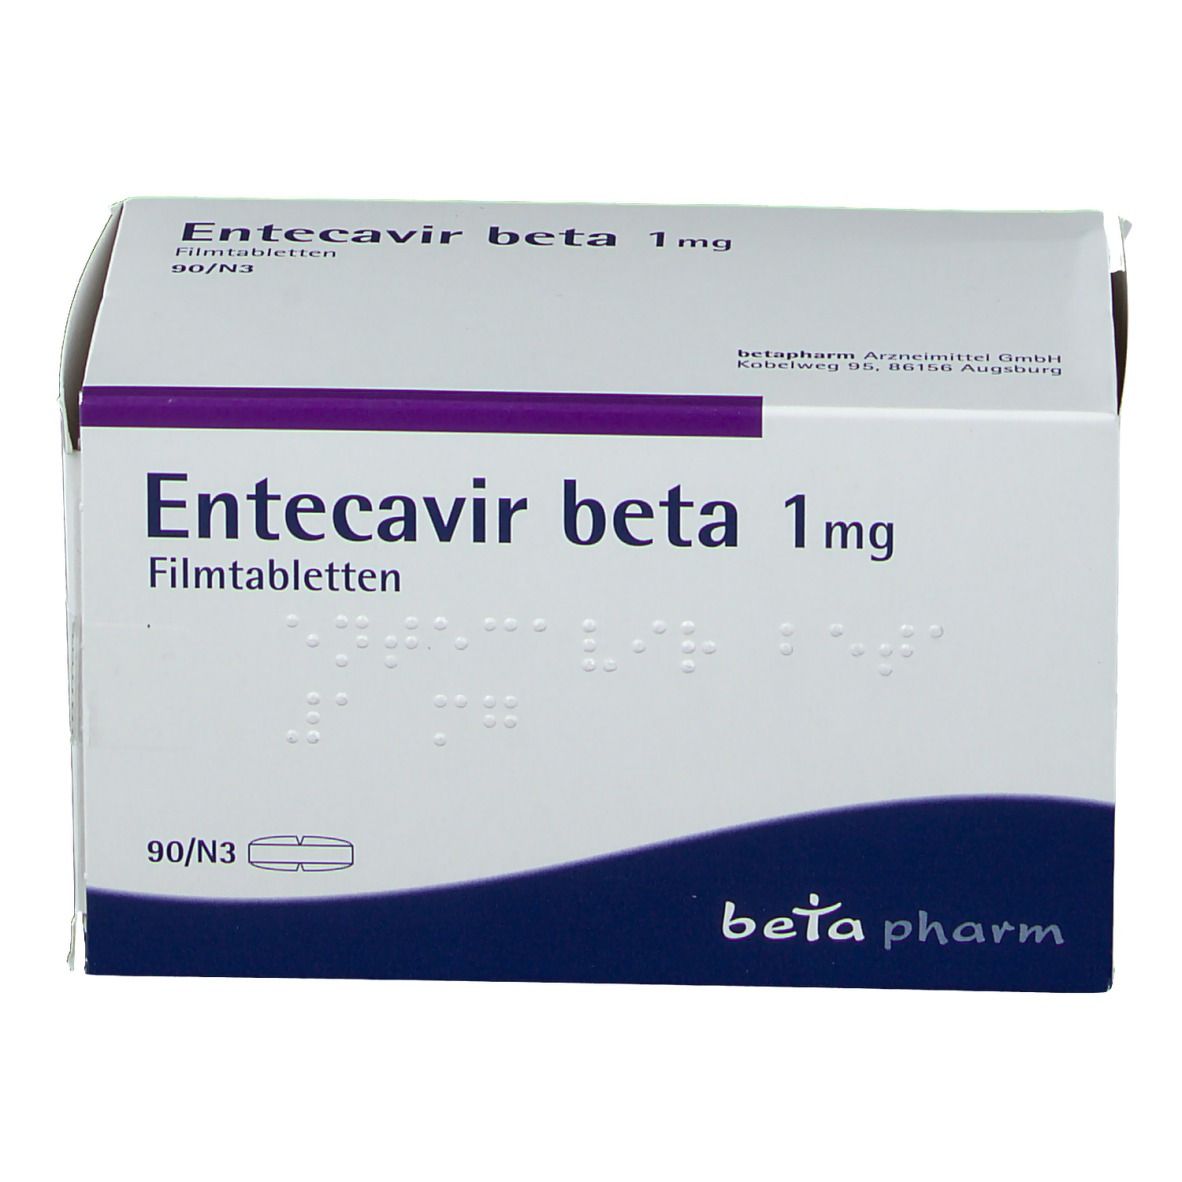 Entecavir beta 1 mg